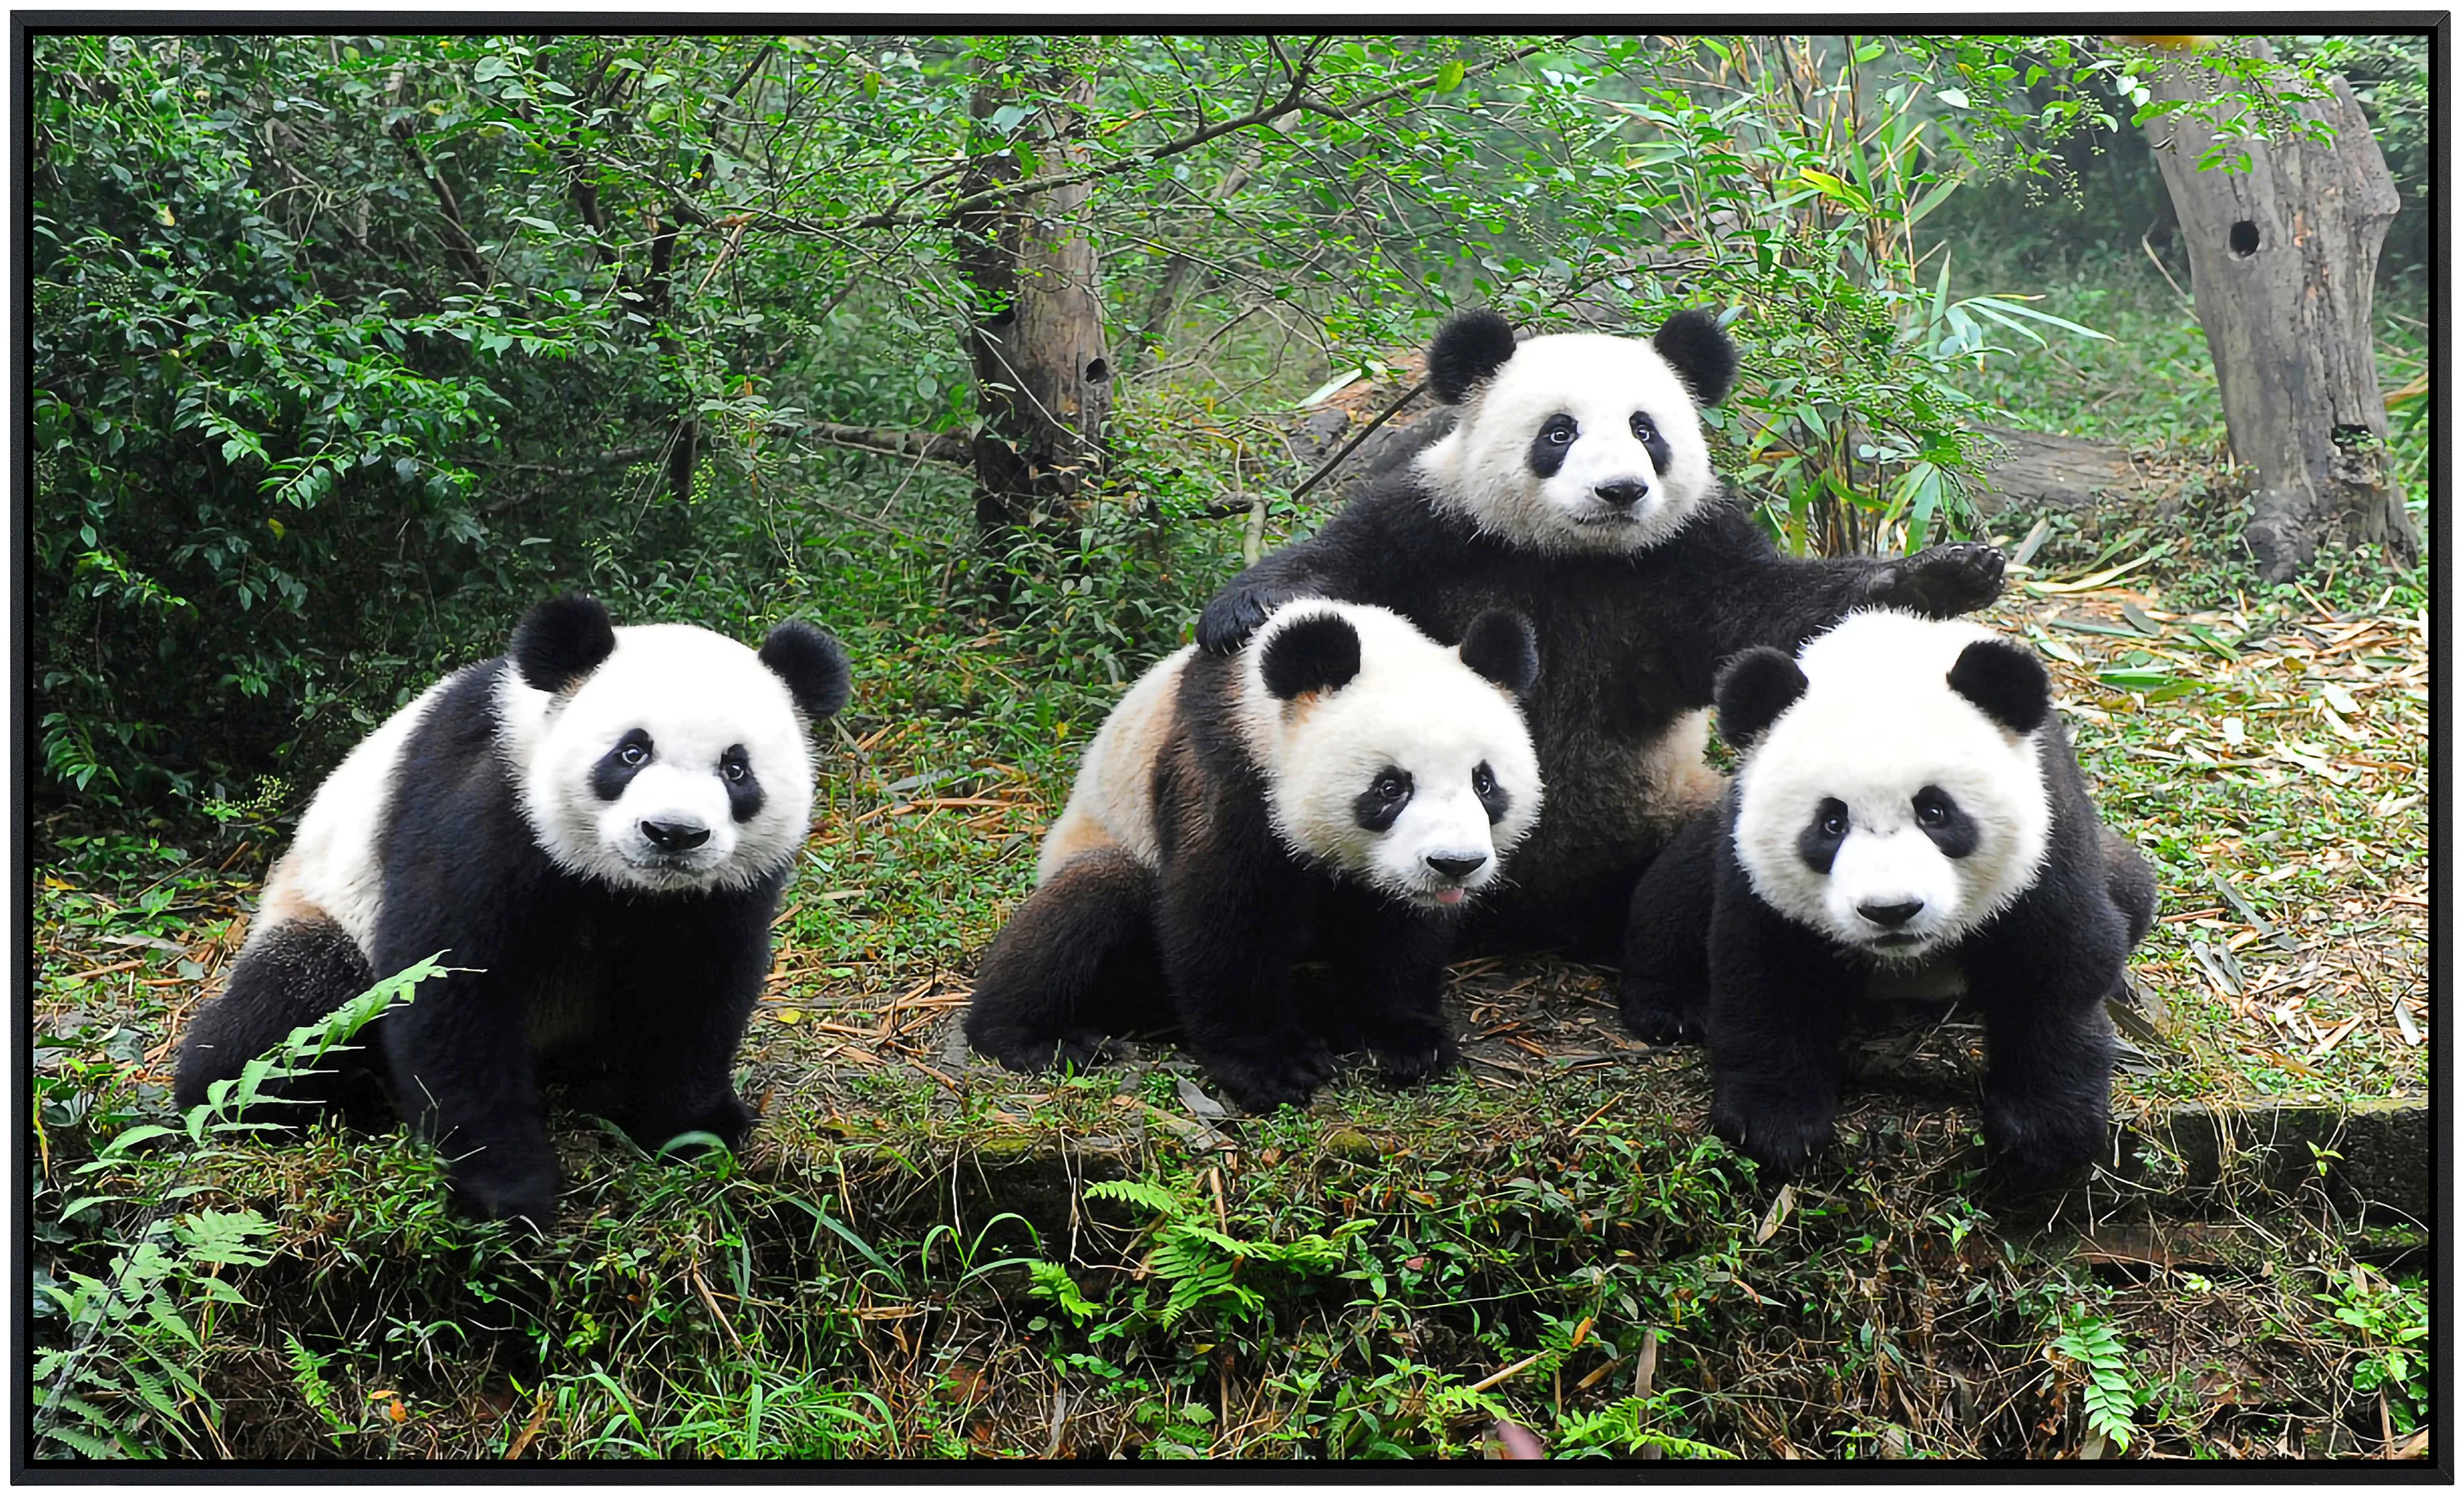 Papermoon Infrarotheizung »Pandafamilie« günstig online kaufen